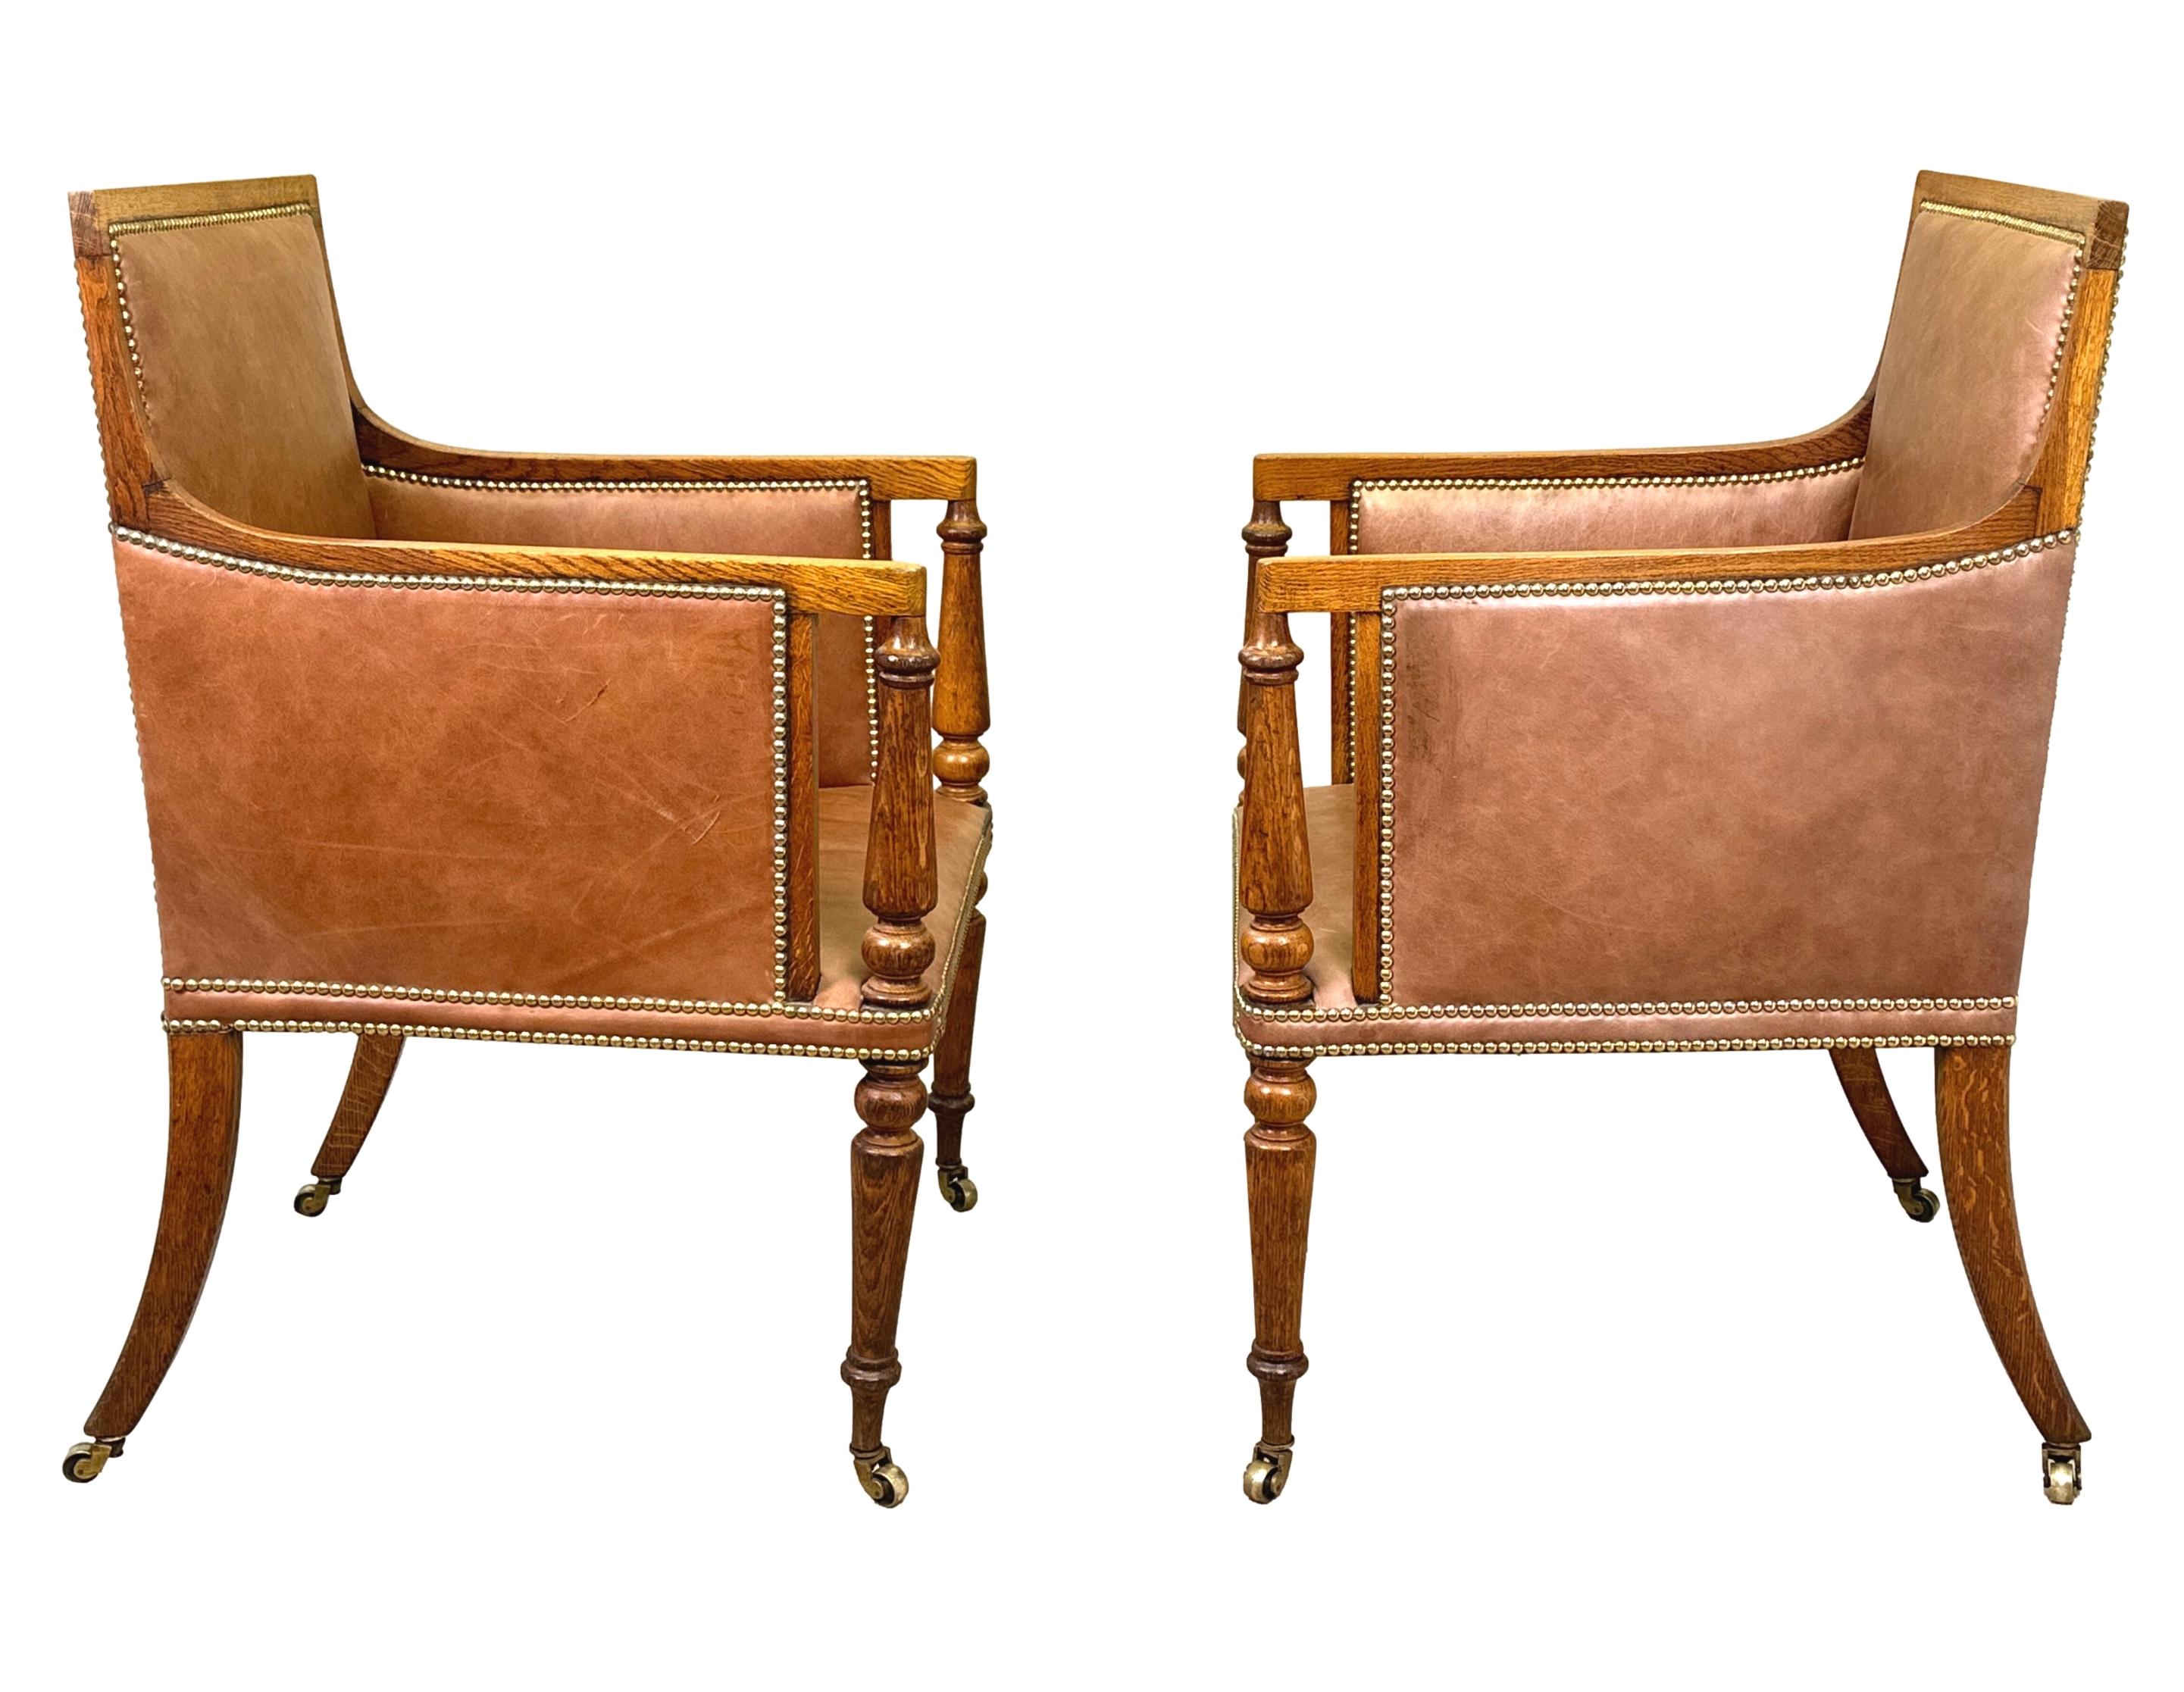 Eine extrem gute Qualität und ungewöhnliche 19. Jahrhundert, Regency-Periode, Paar goldene Eiche Bibliothek Bergere Sessel, in attraktiven Tan Leder gepolstert, mit aufrechten Rücken und Scrolling Arme mit eleganten gedrehten aufrechten unterstützt,